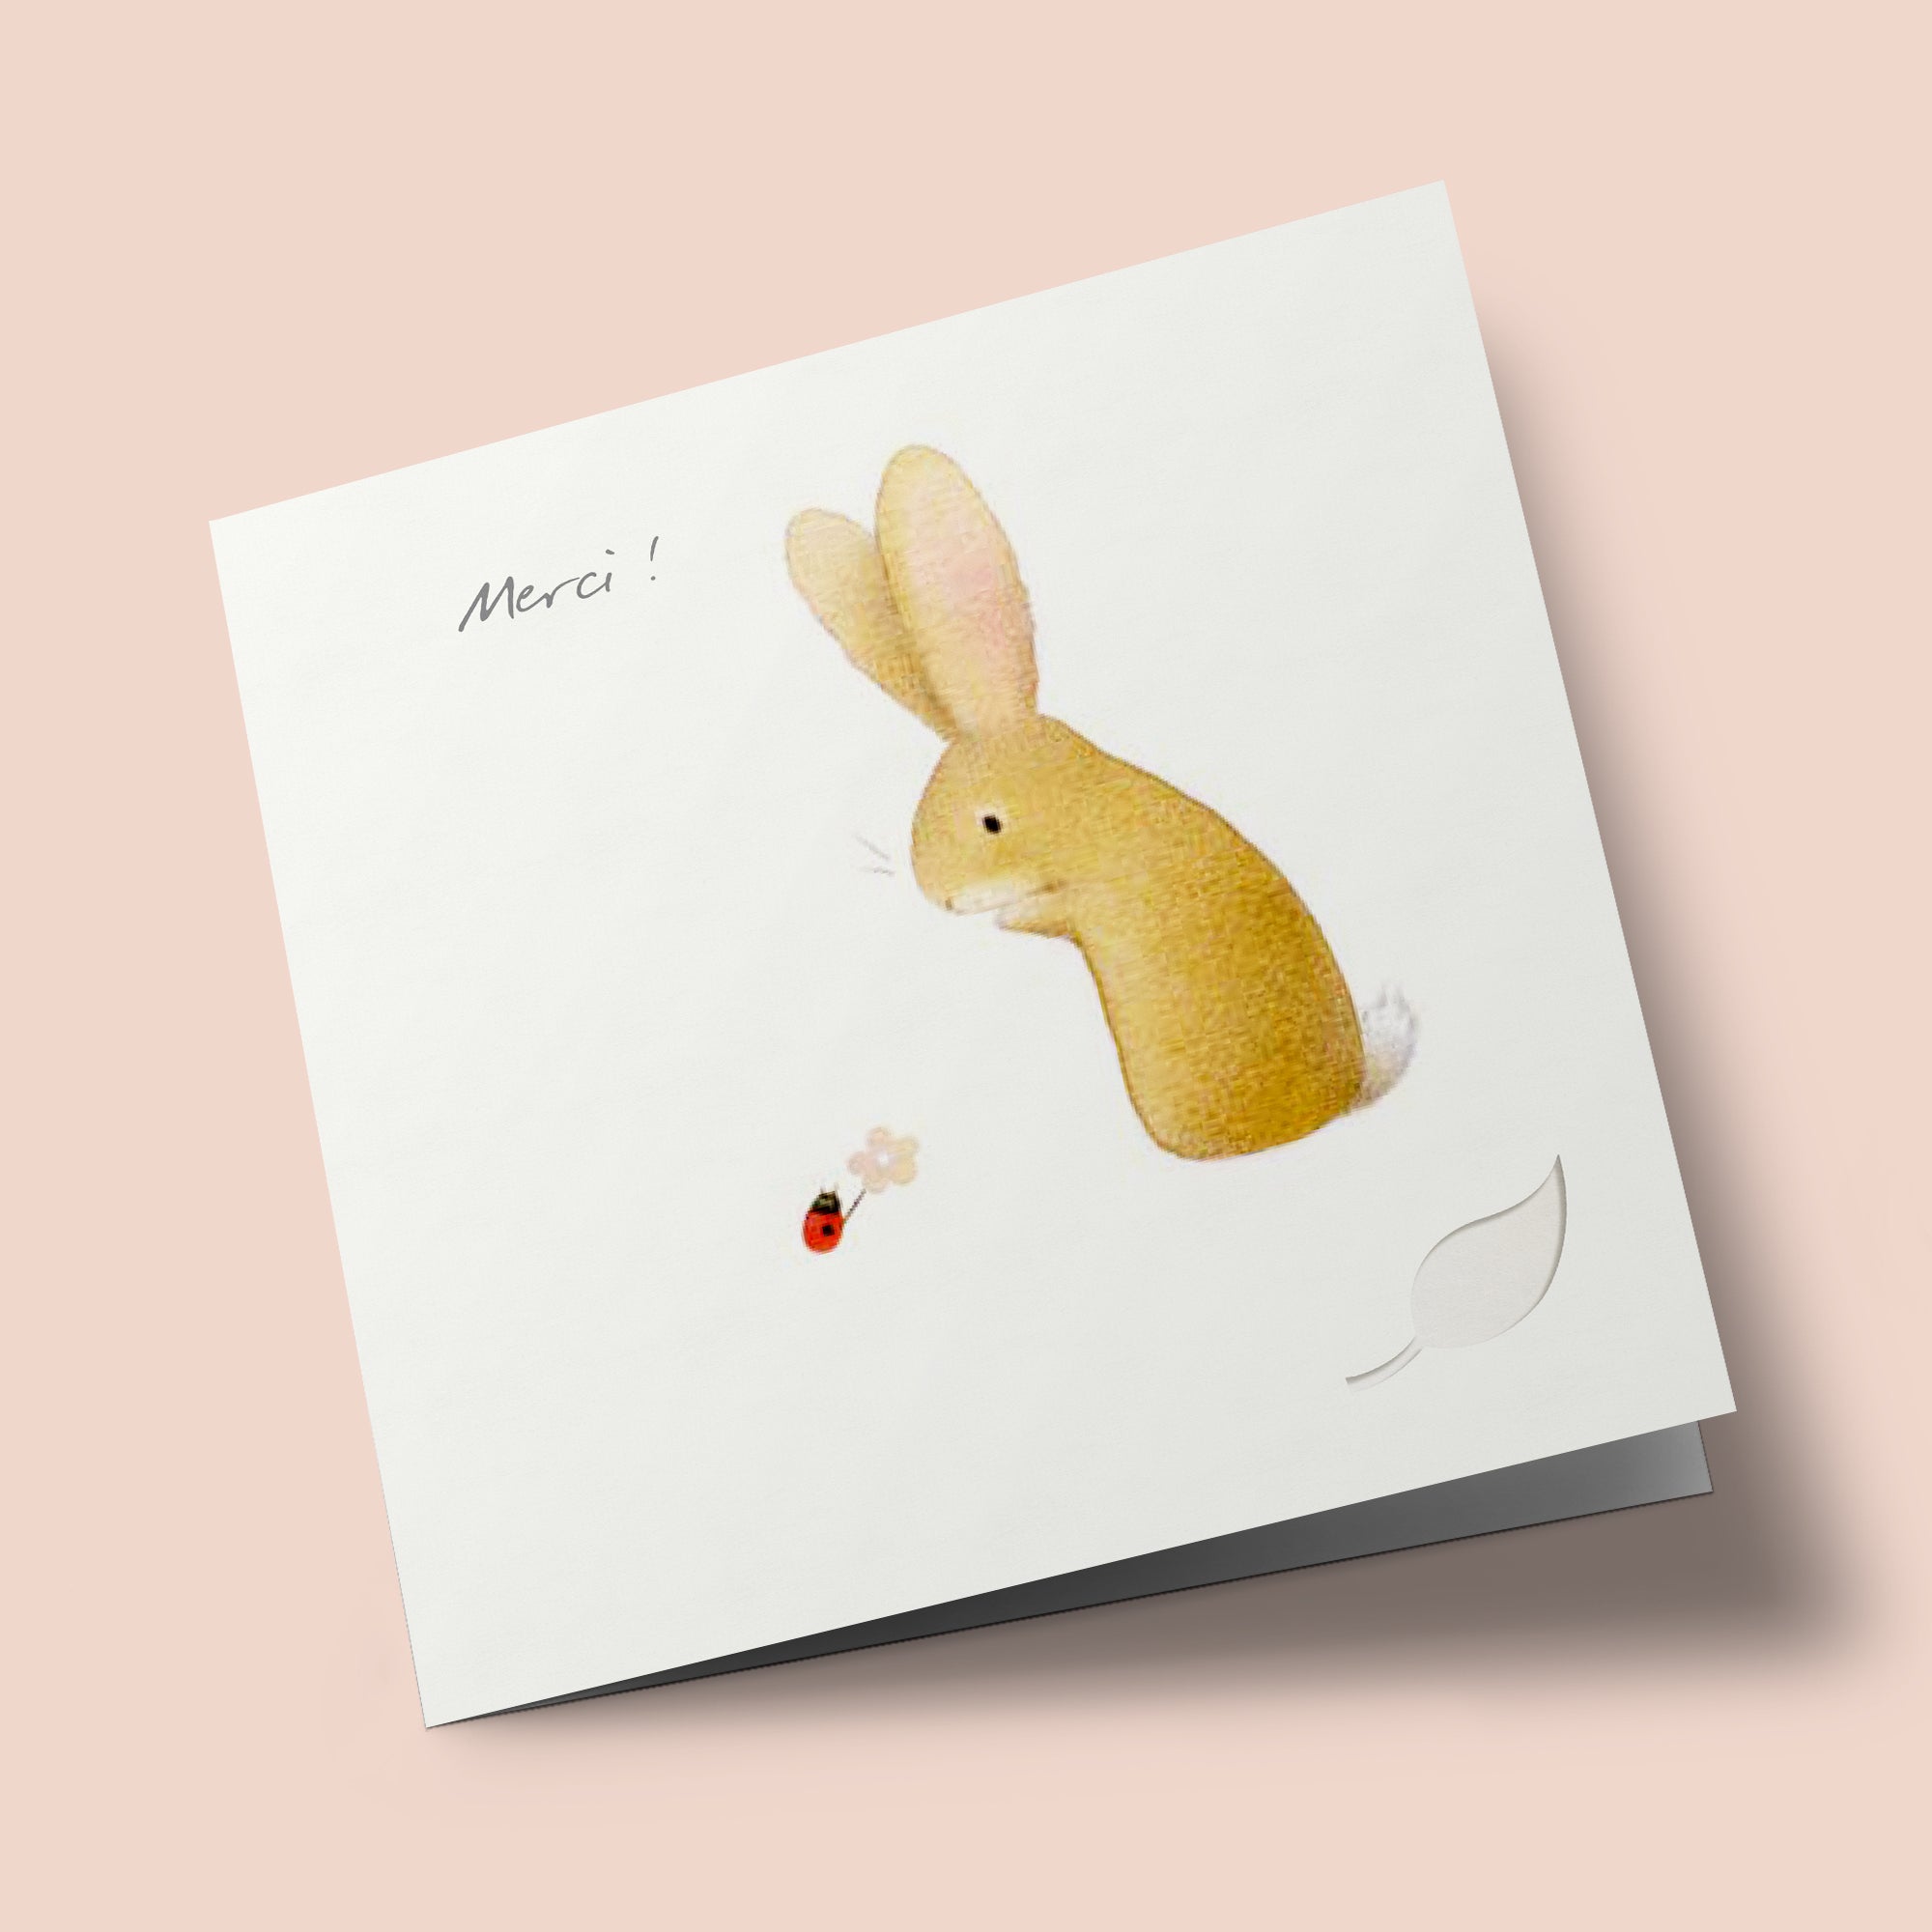 Owl's Nest - "Merci !" - lapin et coccinelle